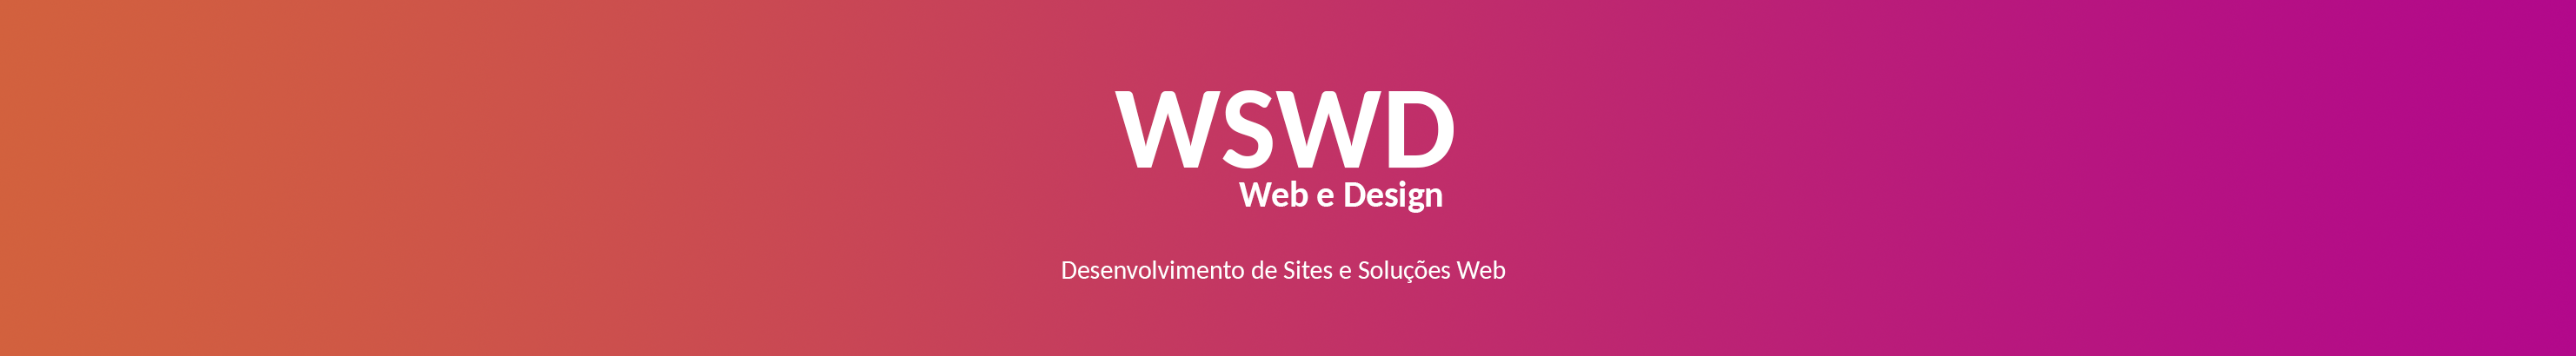 WSWD Web e Design's profile banner